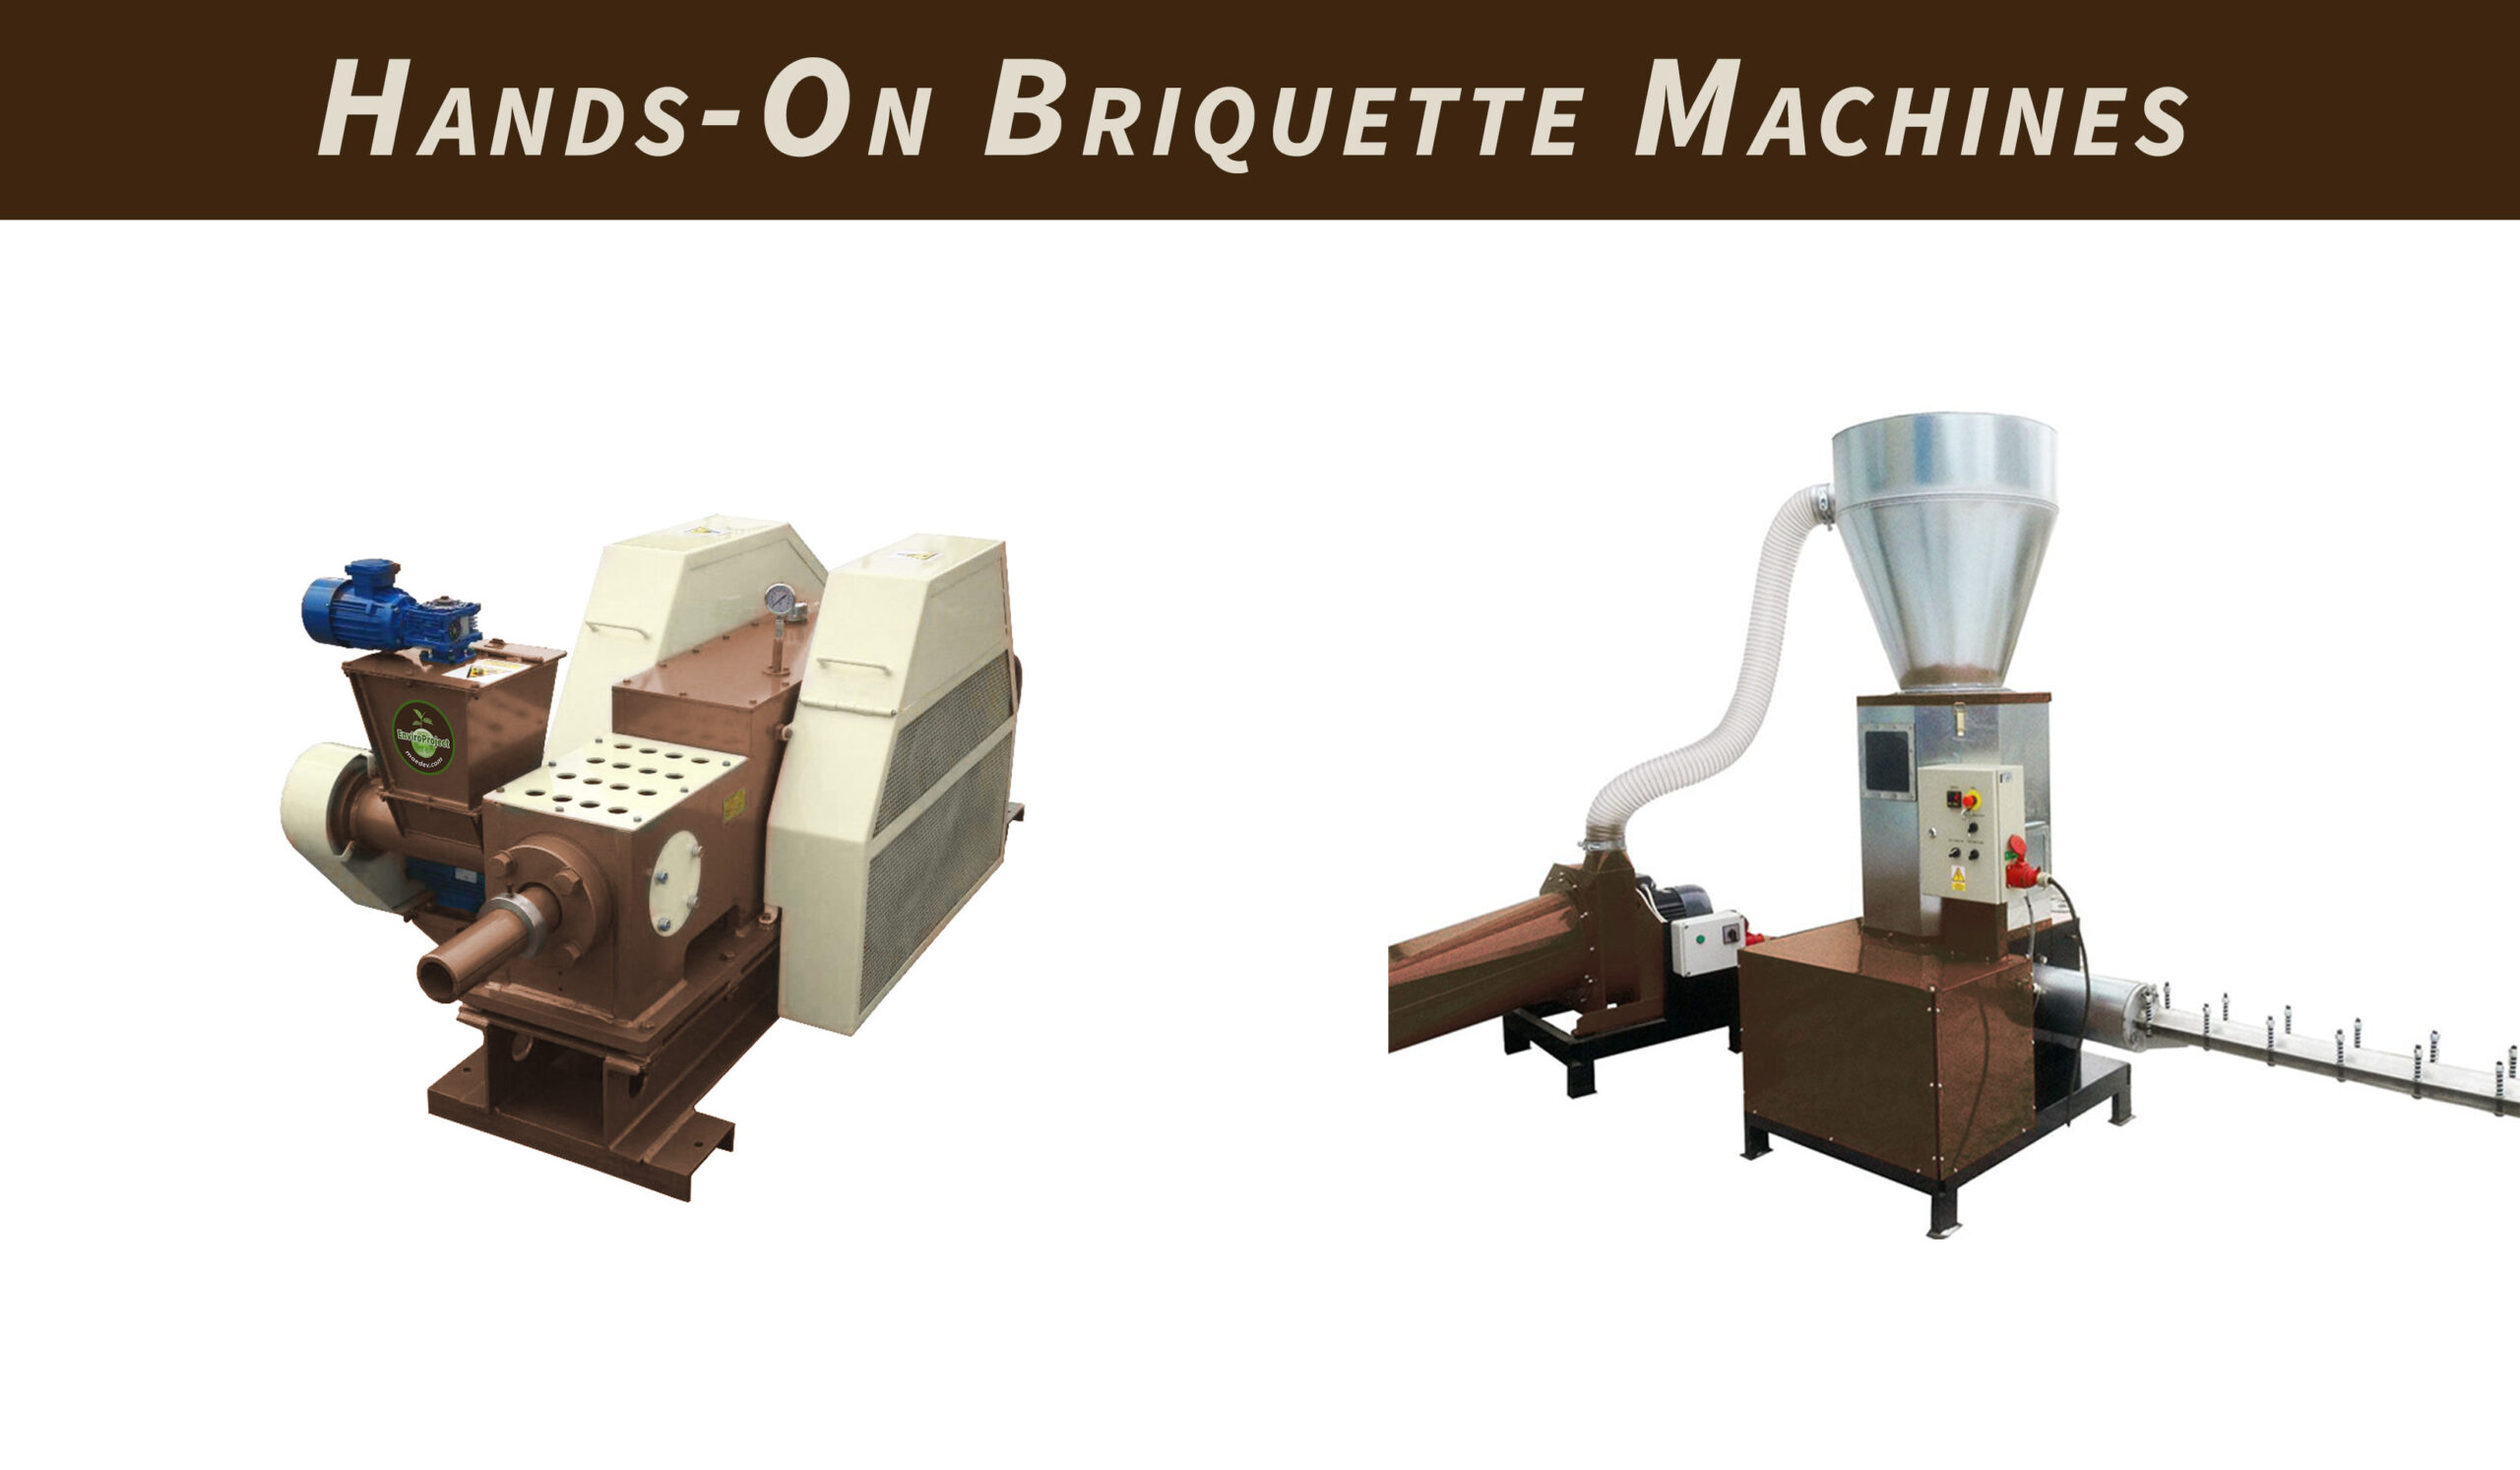 Hands-on briquette machines briquette makers uk